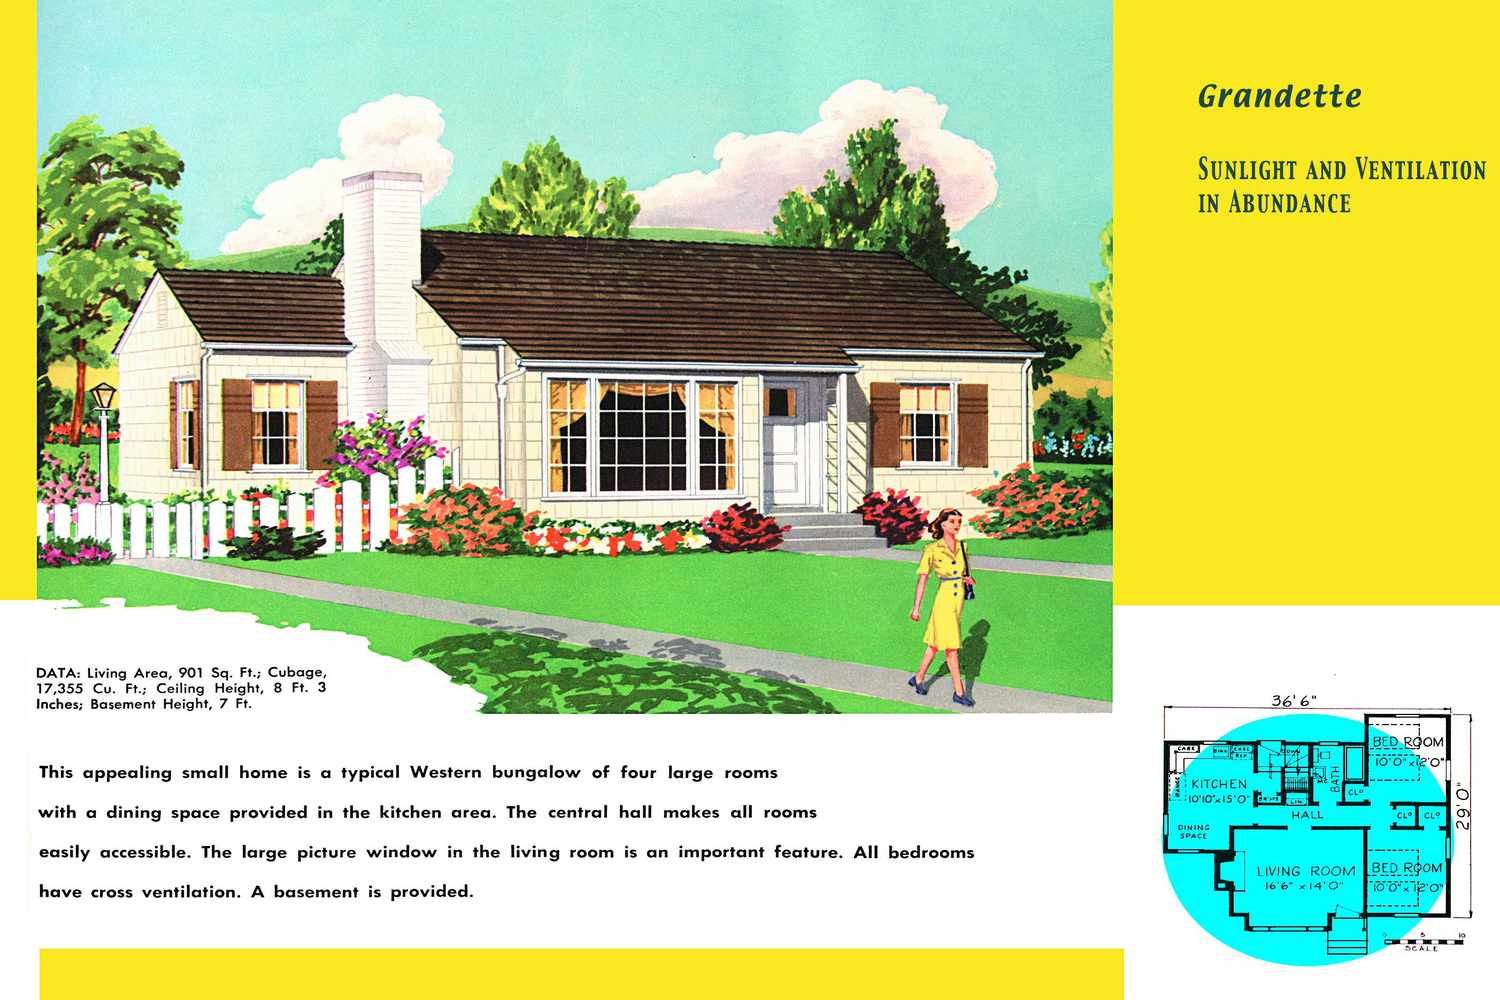 Plano y renderizado de casa tipo rancho descrita como bungalow occidental